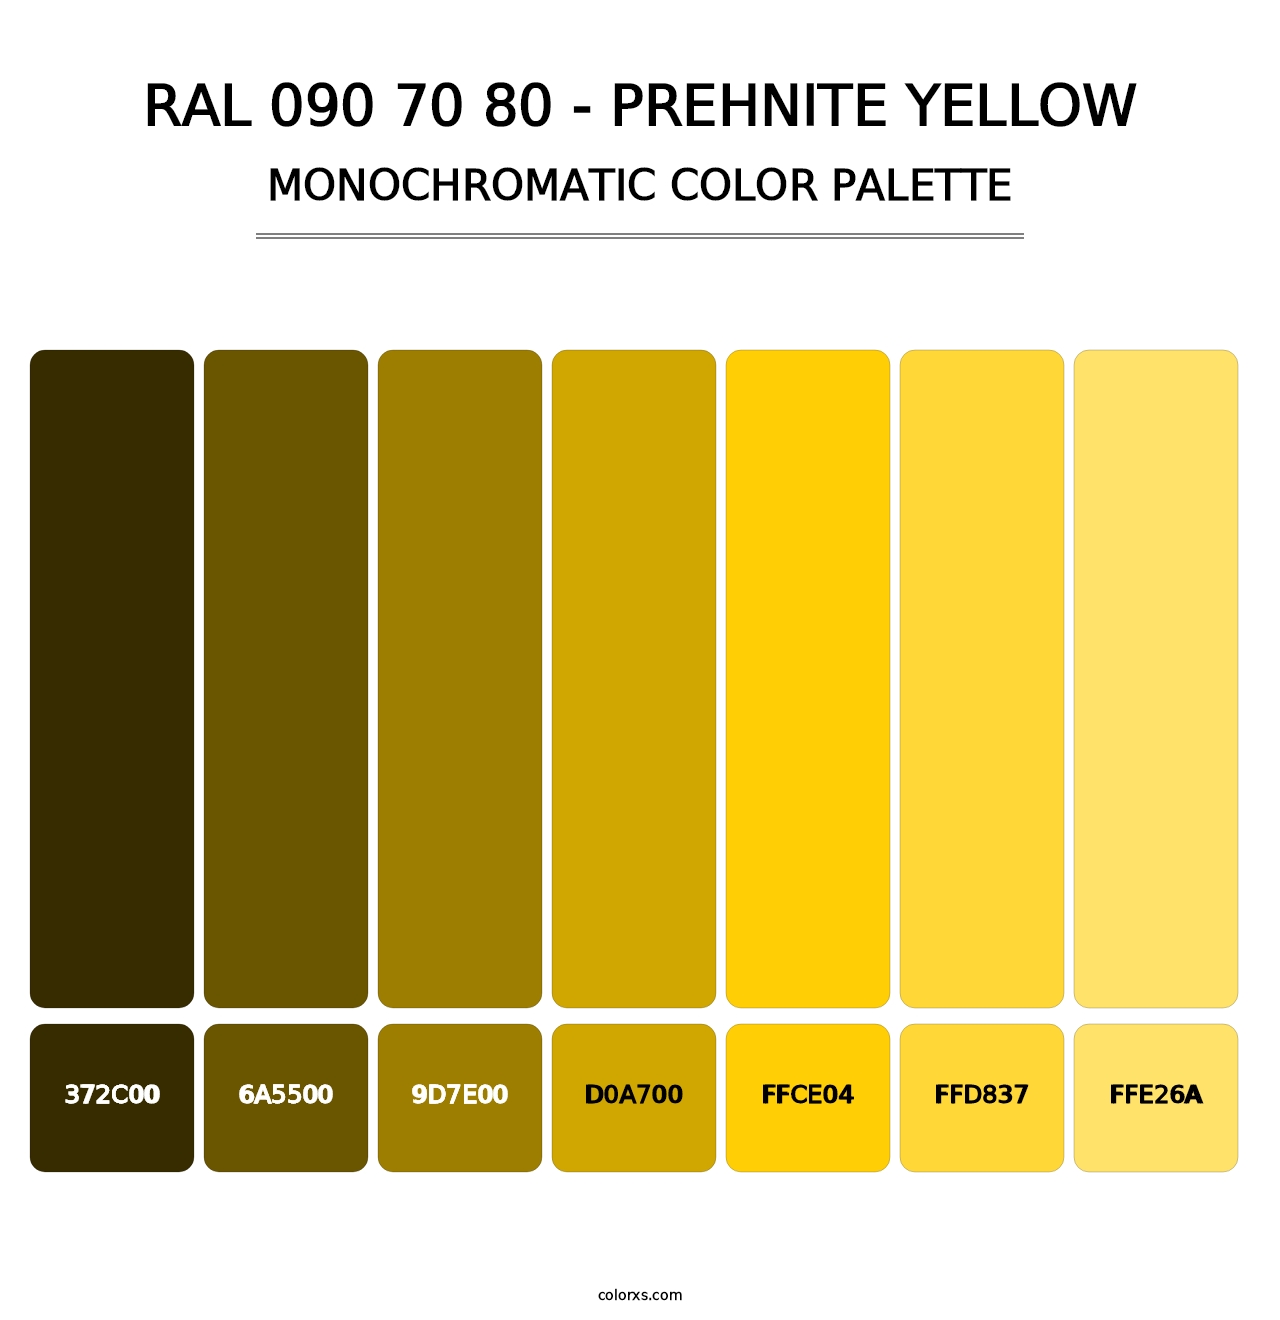 RAL 090 70 80 - Prehnite Yellow - Monochromatic Color Palette